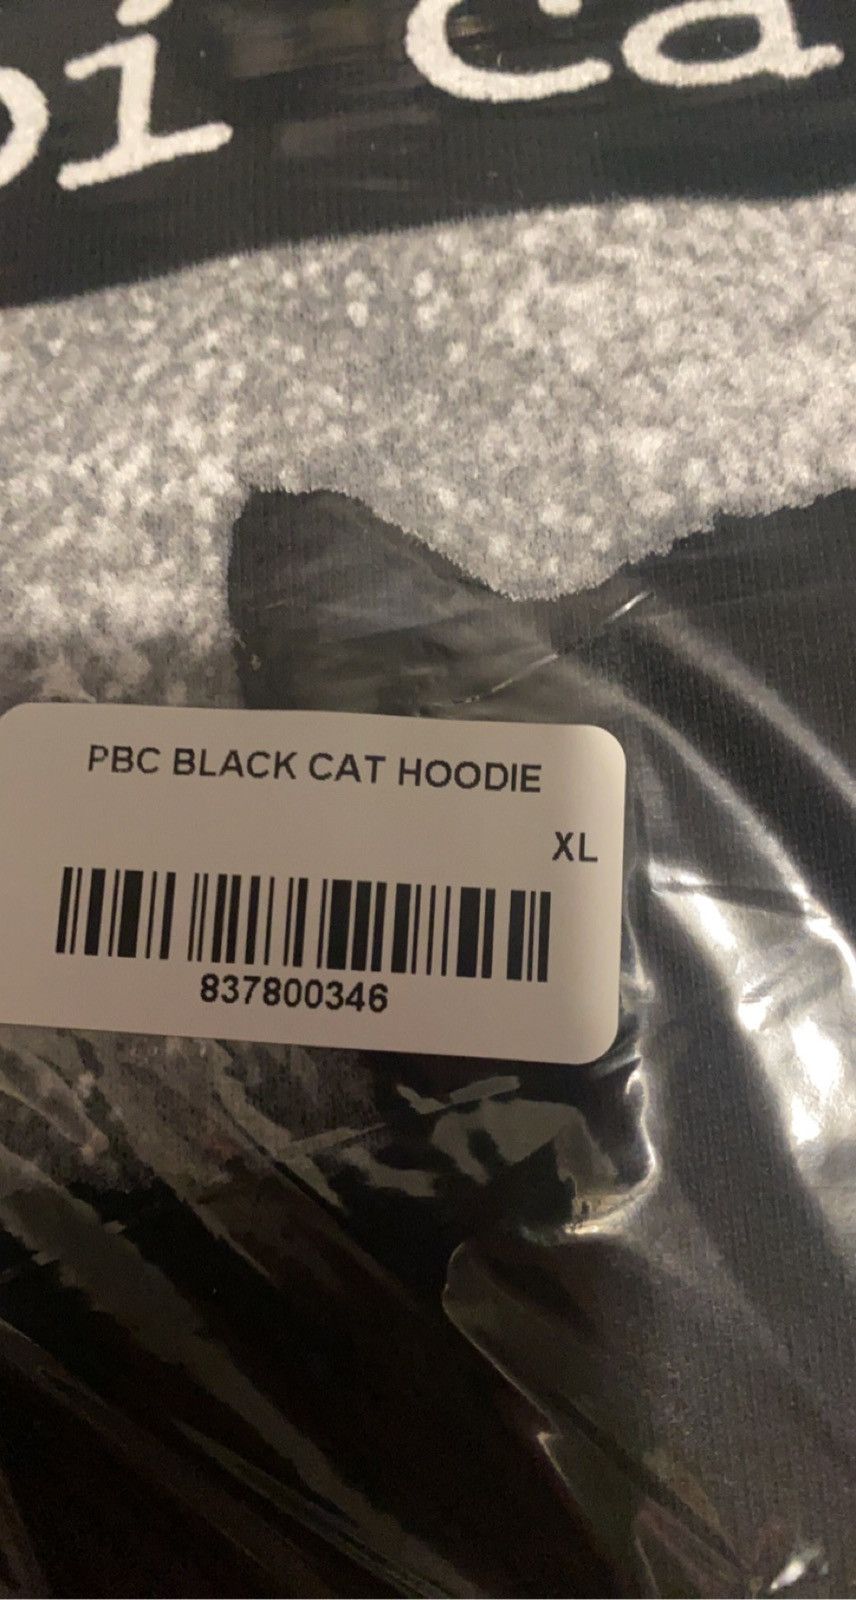 Playboi Carti Playboi Carti WLR Black Cat Hoodie Size US XL / EU 56 / 4 - 2 Preview